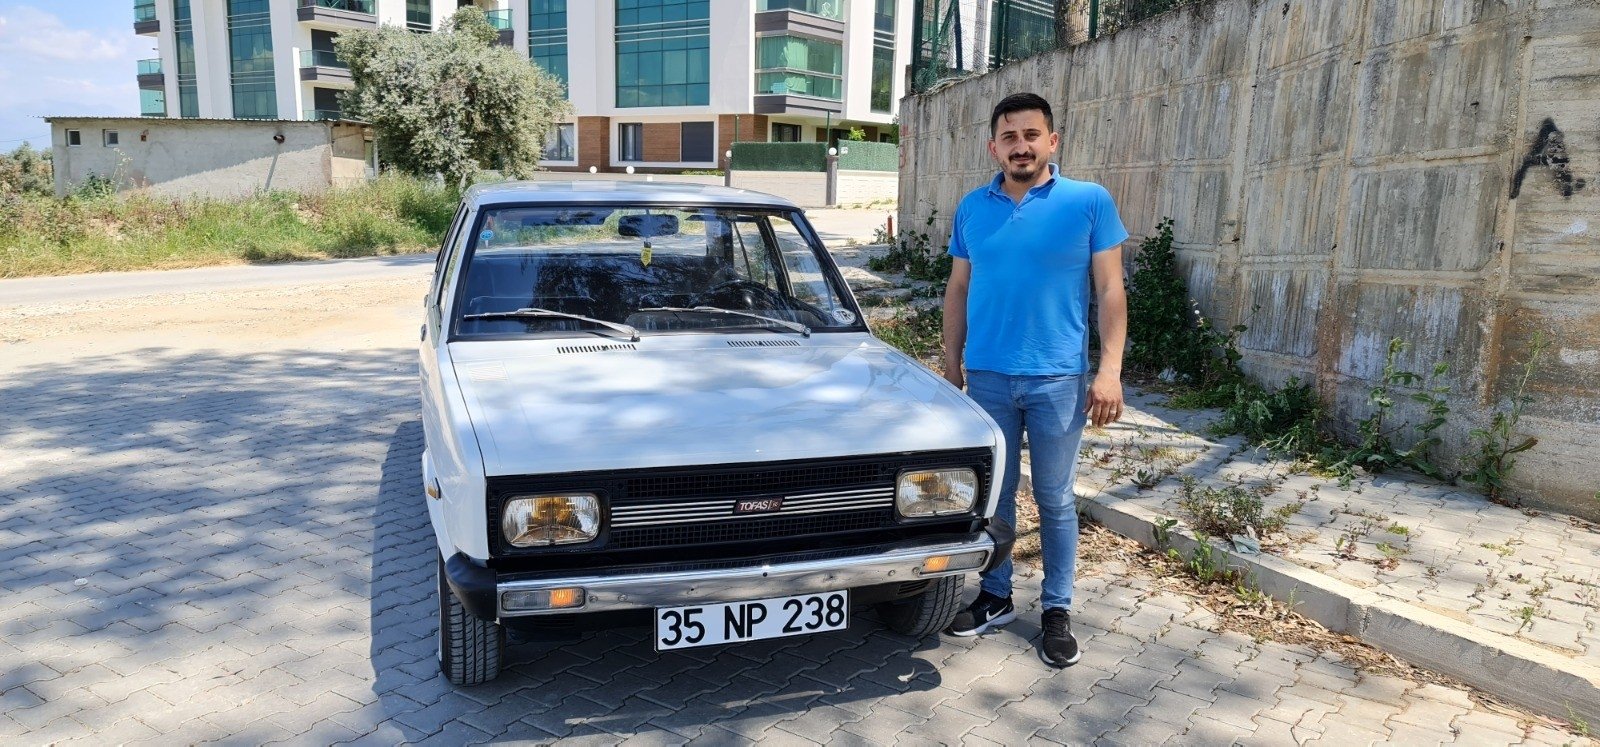 Klasik otomobil tutkunu Hasan Karadışoğlu, Fiat Tofaş Murat 131 'Mirafiori,' İzmir, Türkiye'nin batısında tertemiz korunmuş 1979, 6 Mayıs 2021. (IHA Fotoğrafı)